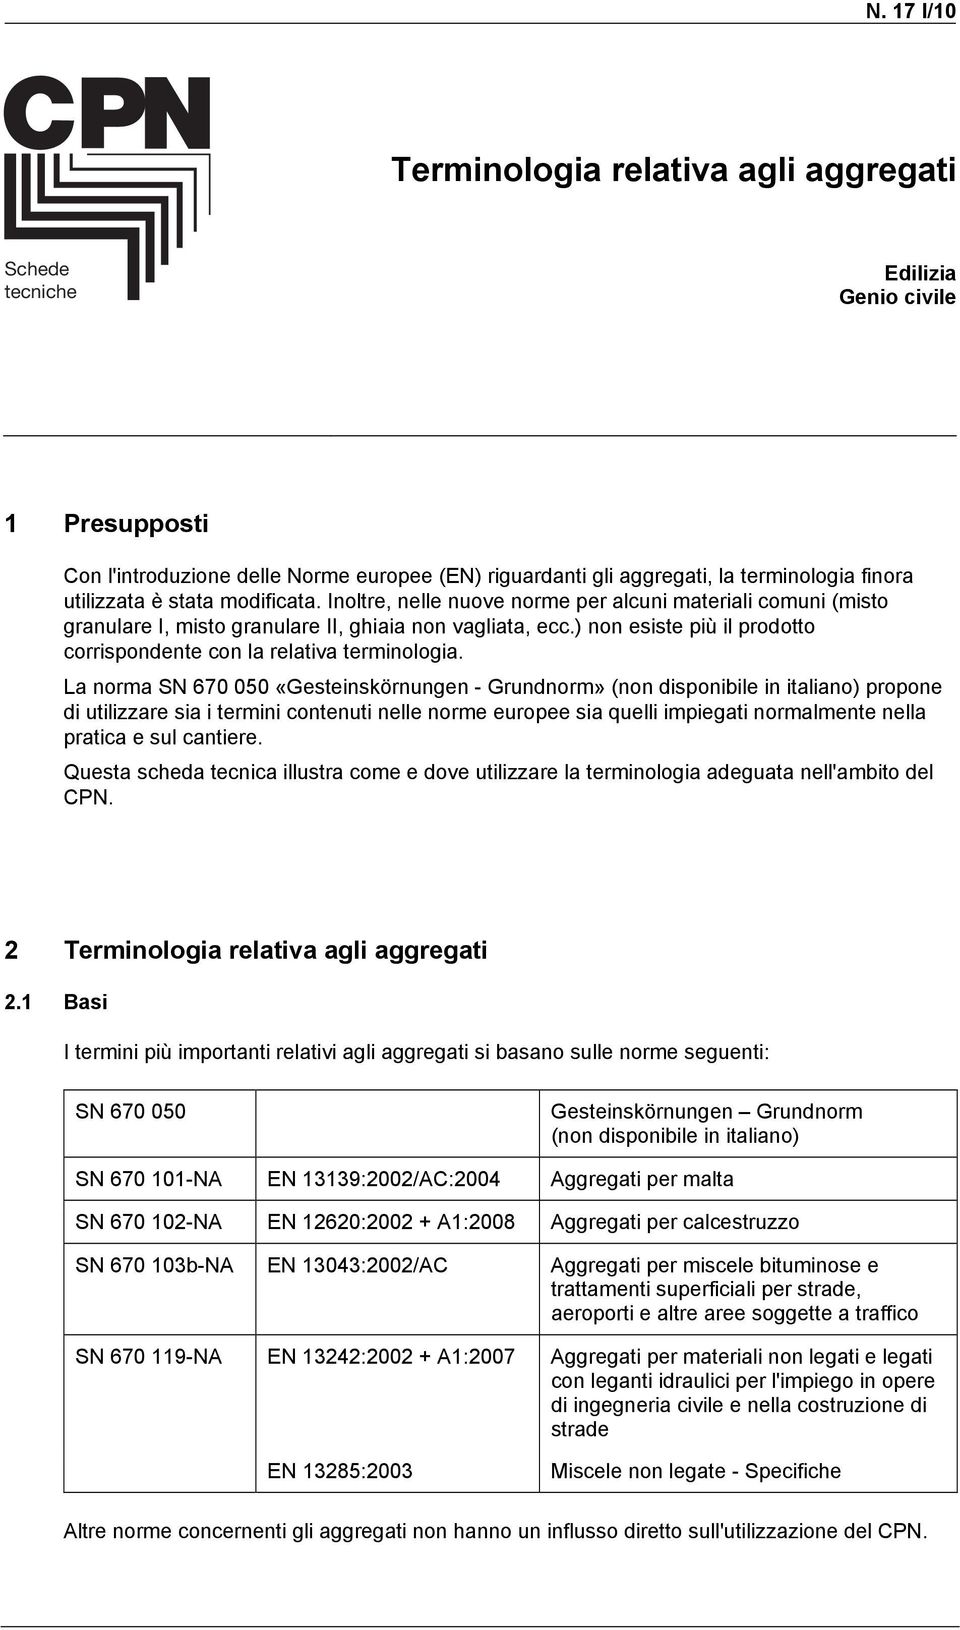 La norma SN 670 050 «Geseinskörnungen - Grundnorm» (non disponibile in ialiano) propone di uilizzare sia i ermini conenui nelle norme europee sia quelli impiegai normalmene nella praica e sul caniere.